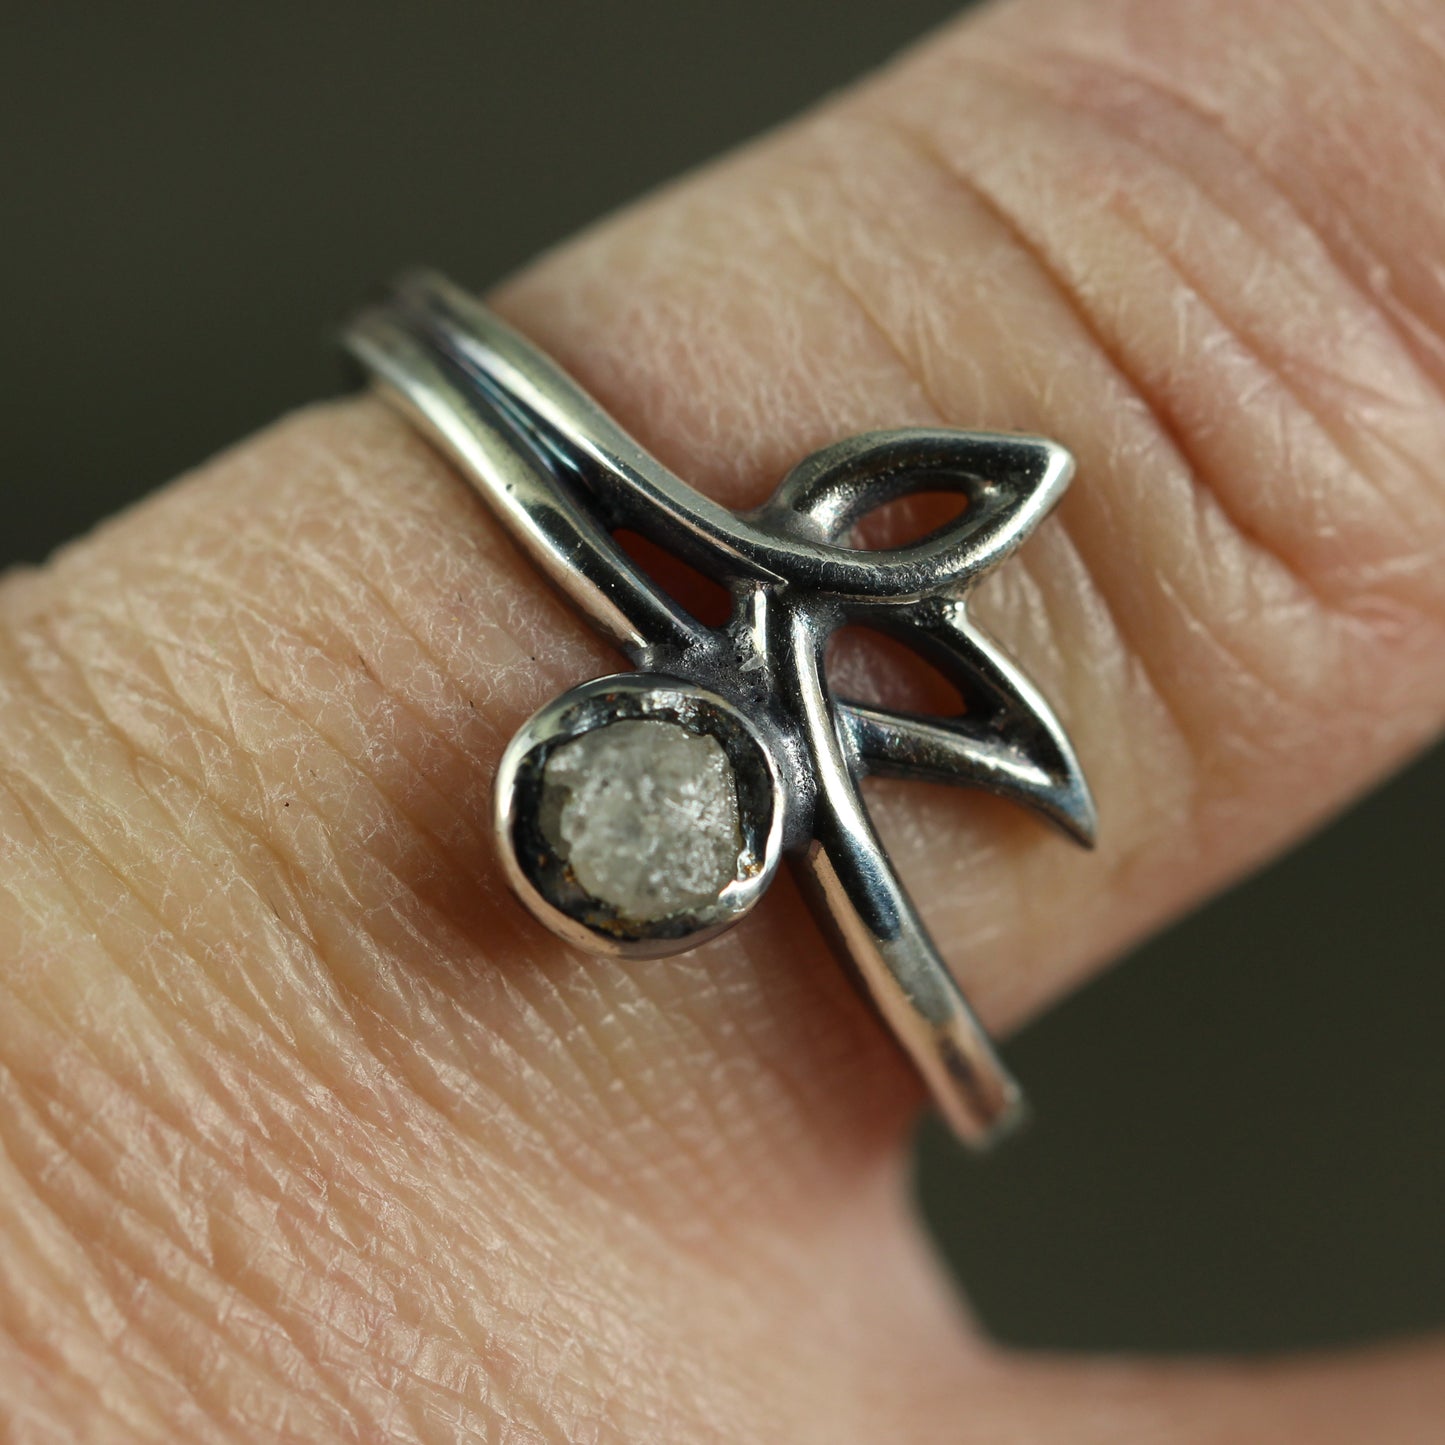 Modern Leaf Ring with Raw Diamond Gemstone